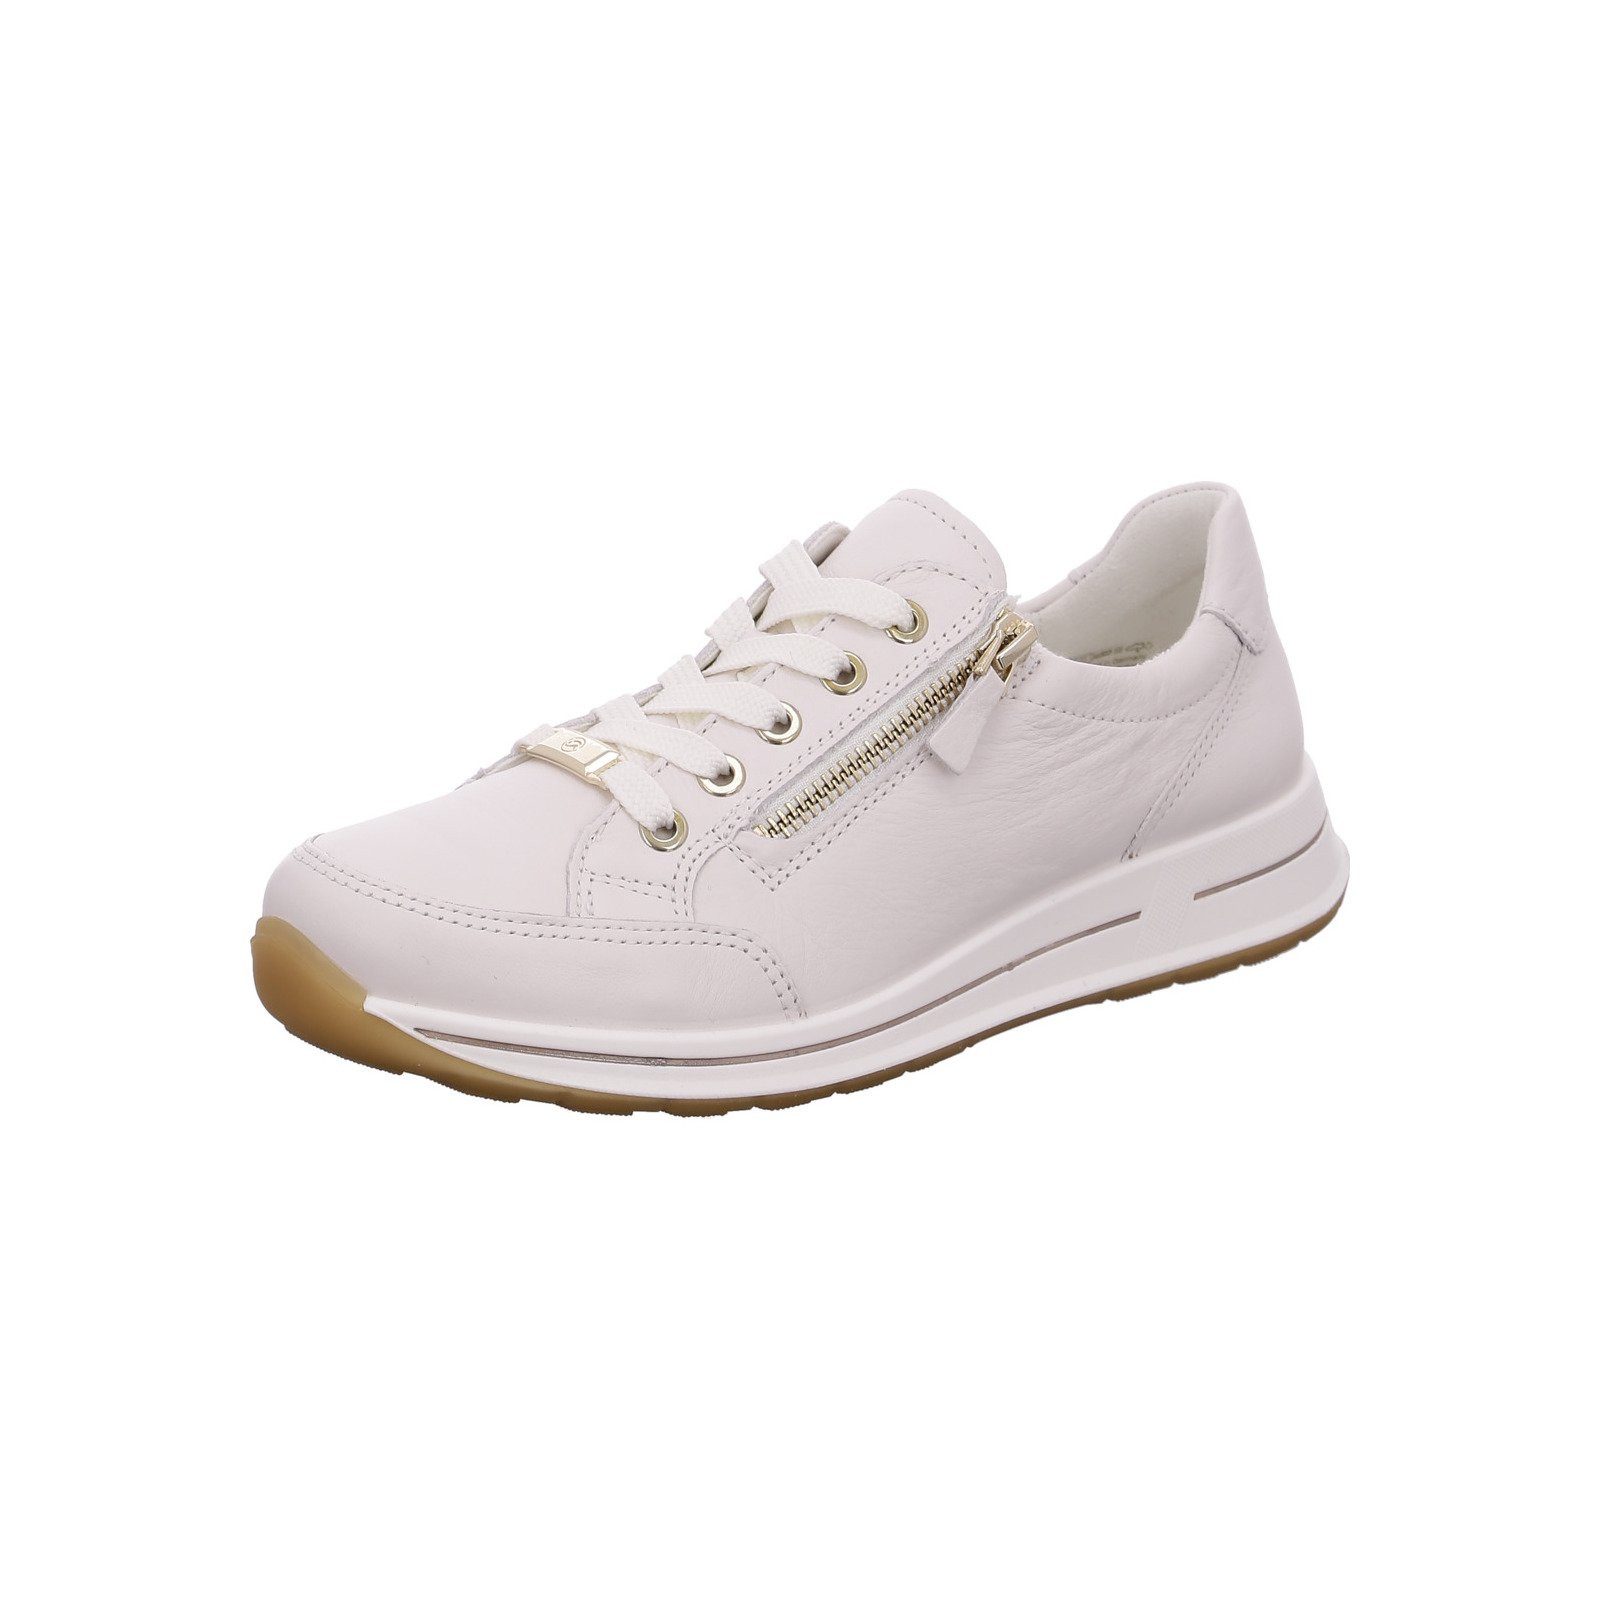 Ara Osaka - Damen Schuhe Sneaker Sneaker Glattleder weiß